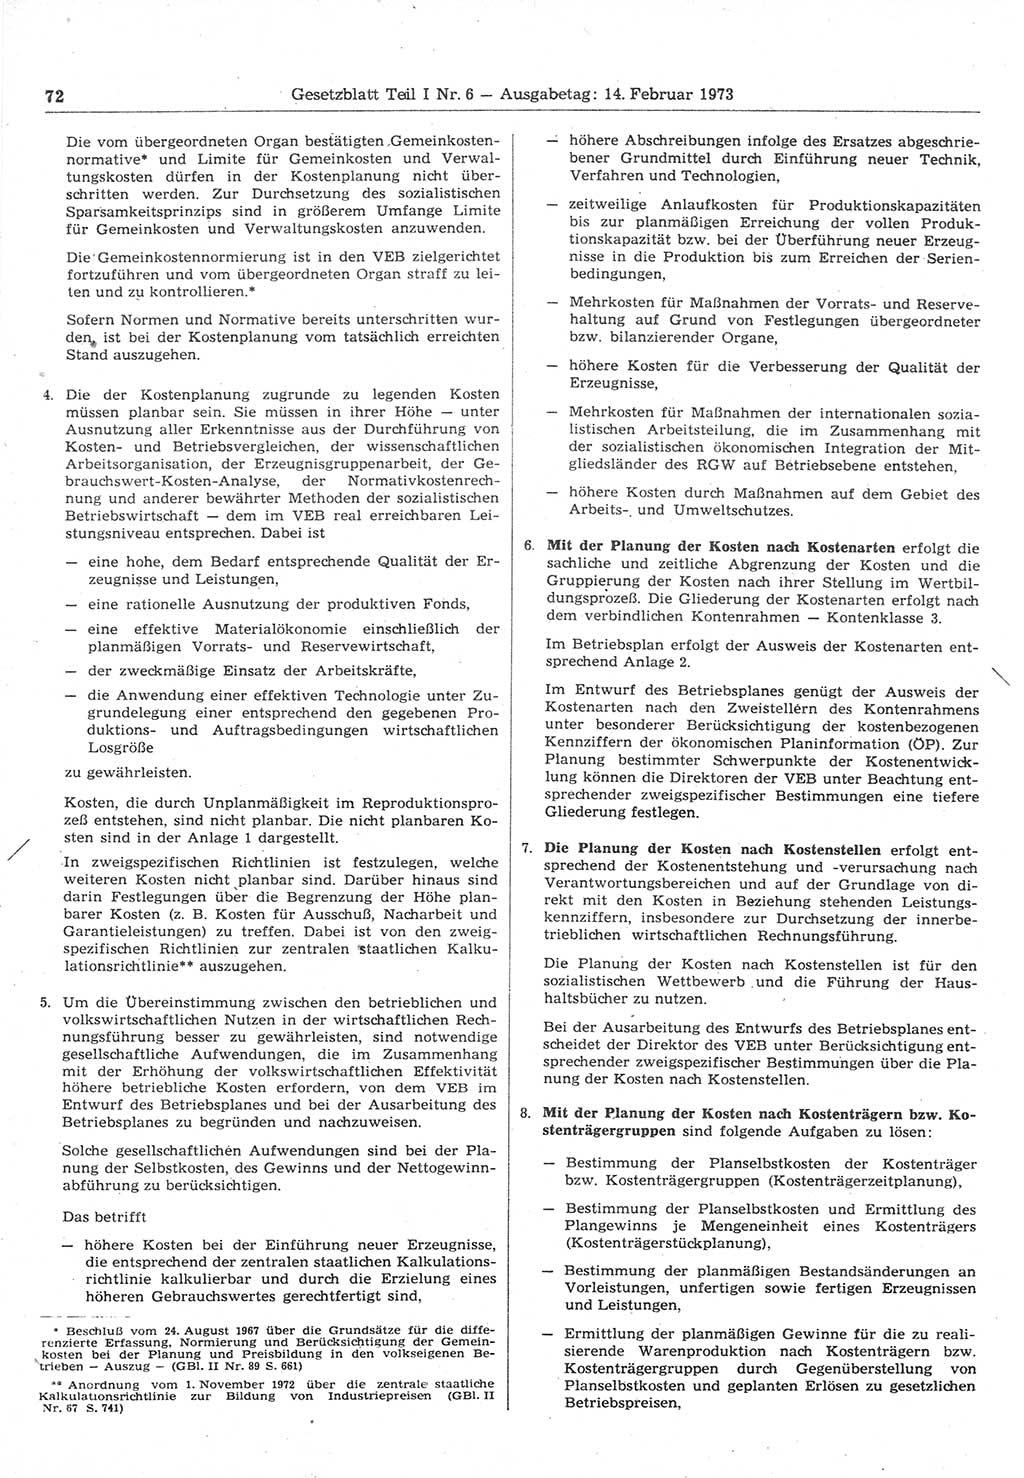 Gesetzblatt (GBl.) der Deutschen Demokratischen Republik (DDR) Teil Ⅰ 1973, Seite 72 (GBl. DDR Ⅰ 1973, S. 72)